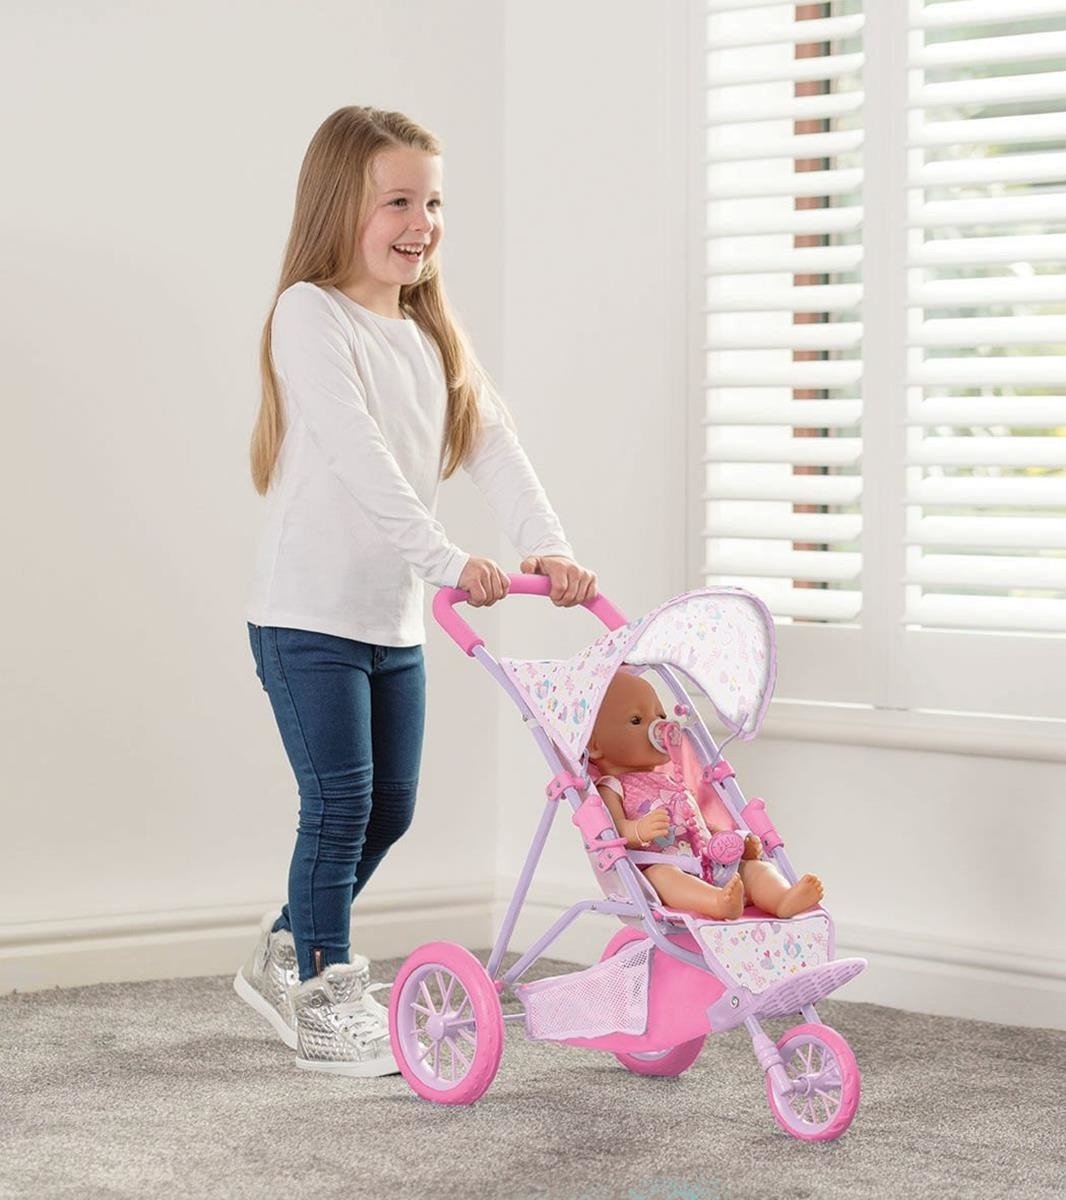 BABY BORN Wózek dla lalek spacerówka 3-kołowa